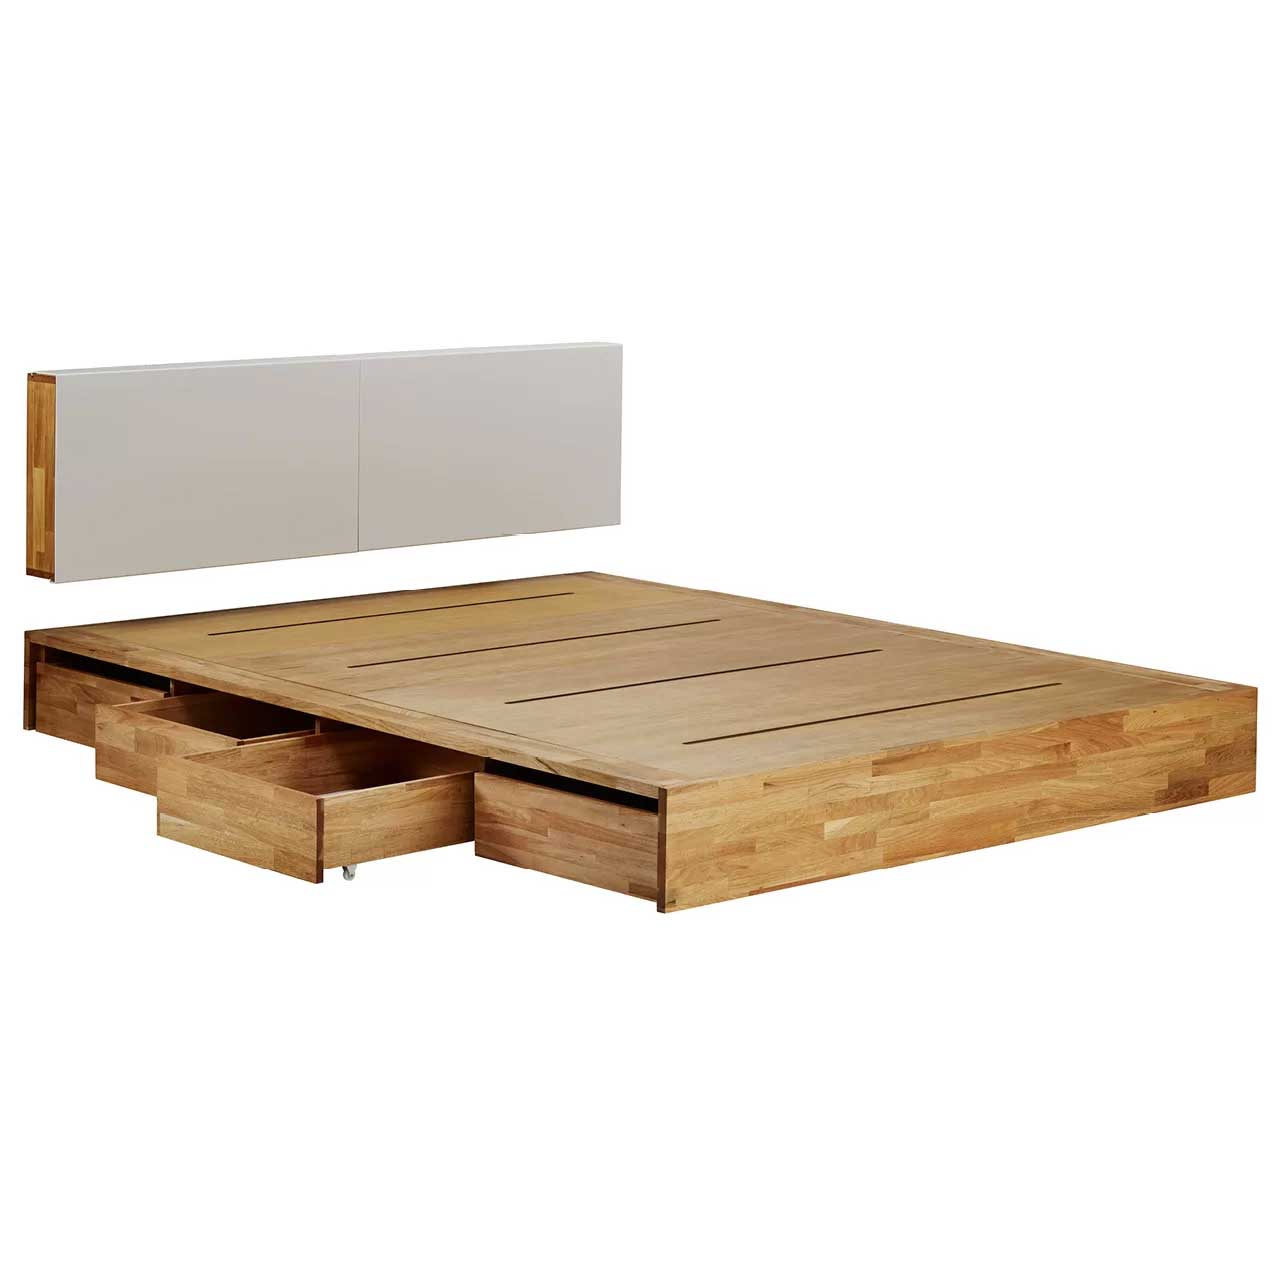 تخت خواب دو نفره تمام چوب صادراتی کد 54.0 سایز 183*231 سانتی متر